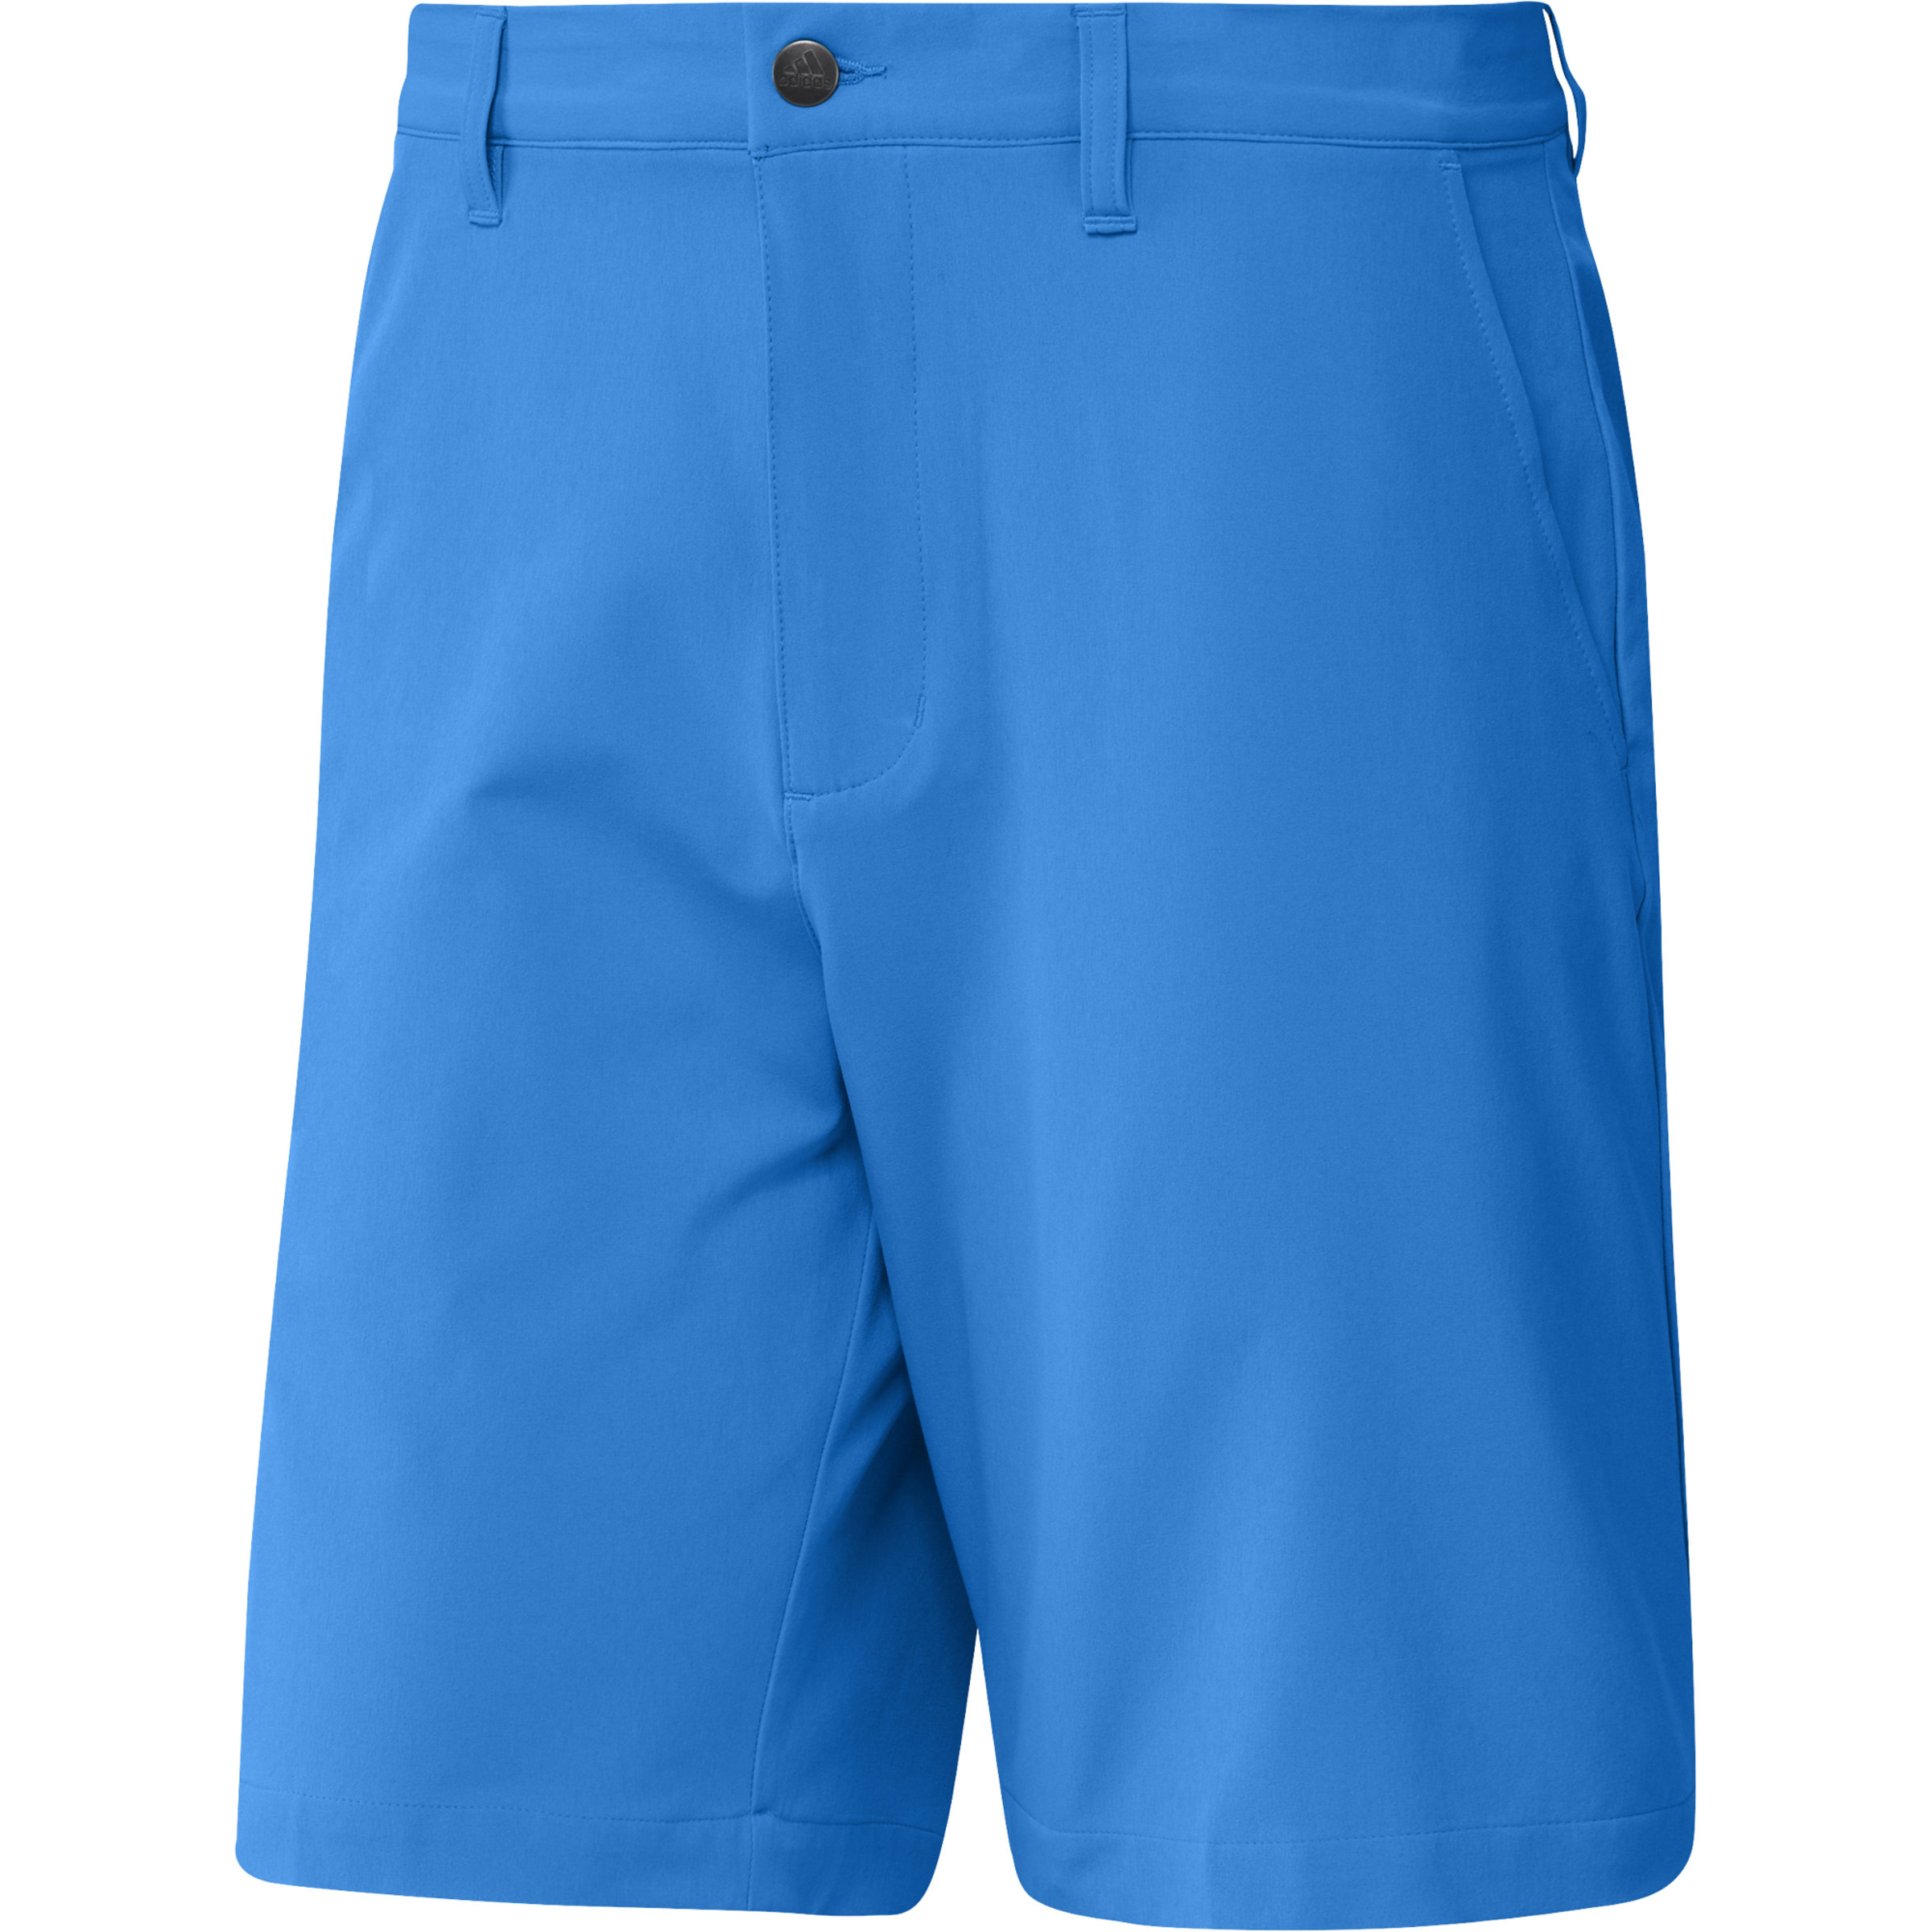 Adidas Ultimate365 Shorts Blue